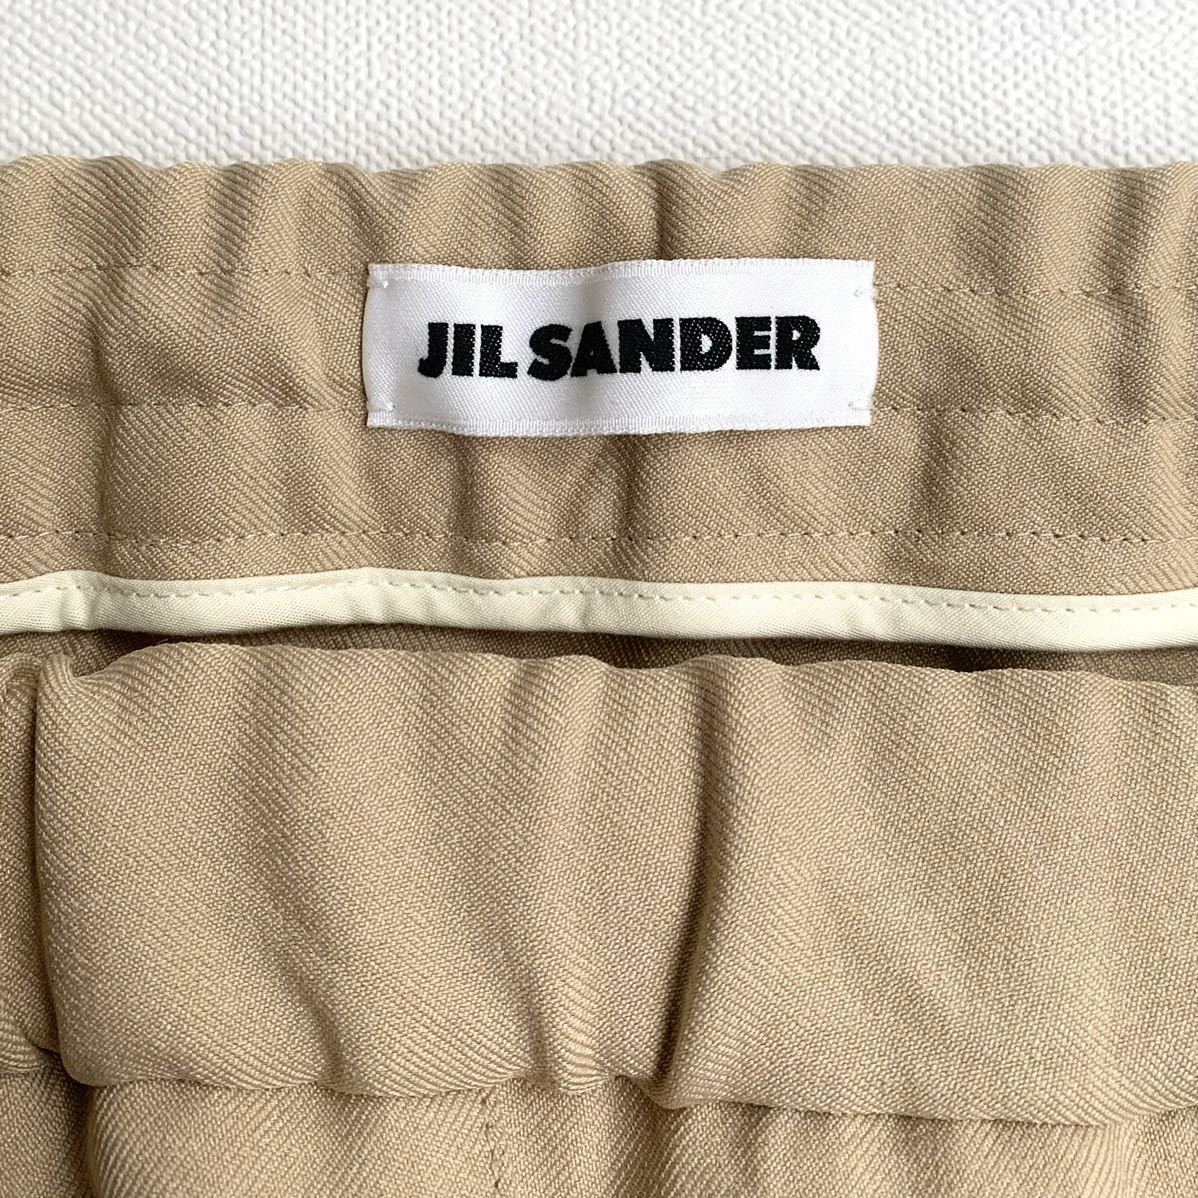  новый товар JIL SANDER Jil Sander помятость обработка draw -тактный кольцо брюки 52 мужской Camel relax Fit осень-зима made in italy бесплатная доставка 